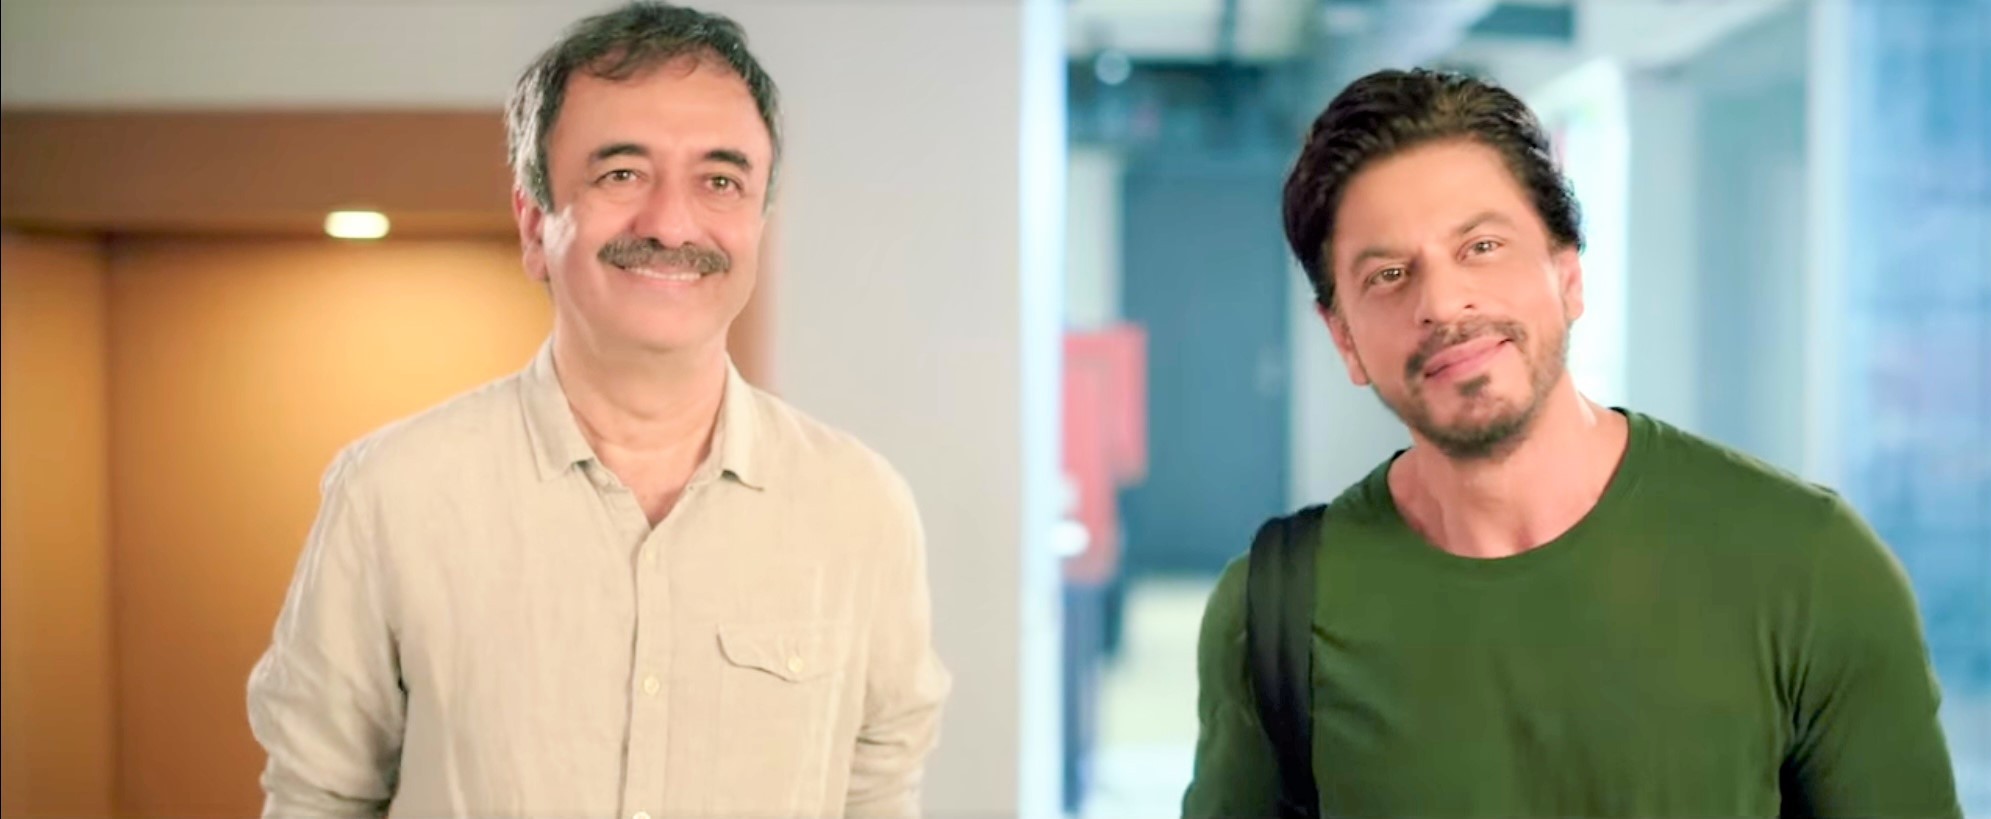 निर्देशक राजकुमार हिरानी के साथ शाहरुख खान और तापसी पन्नू की फिल्म डंकी शीर्षक